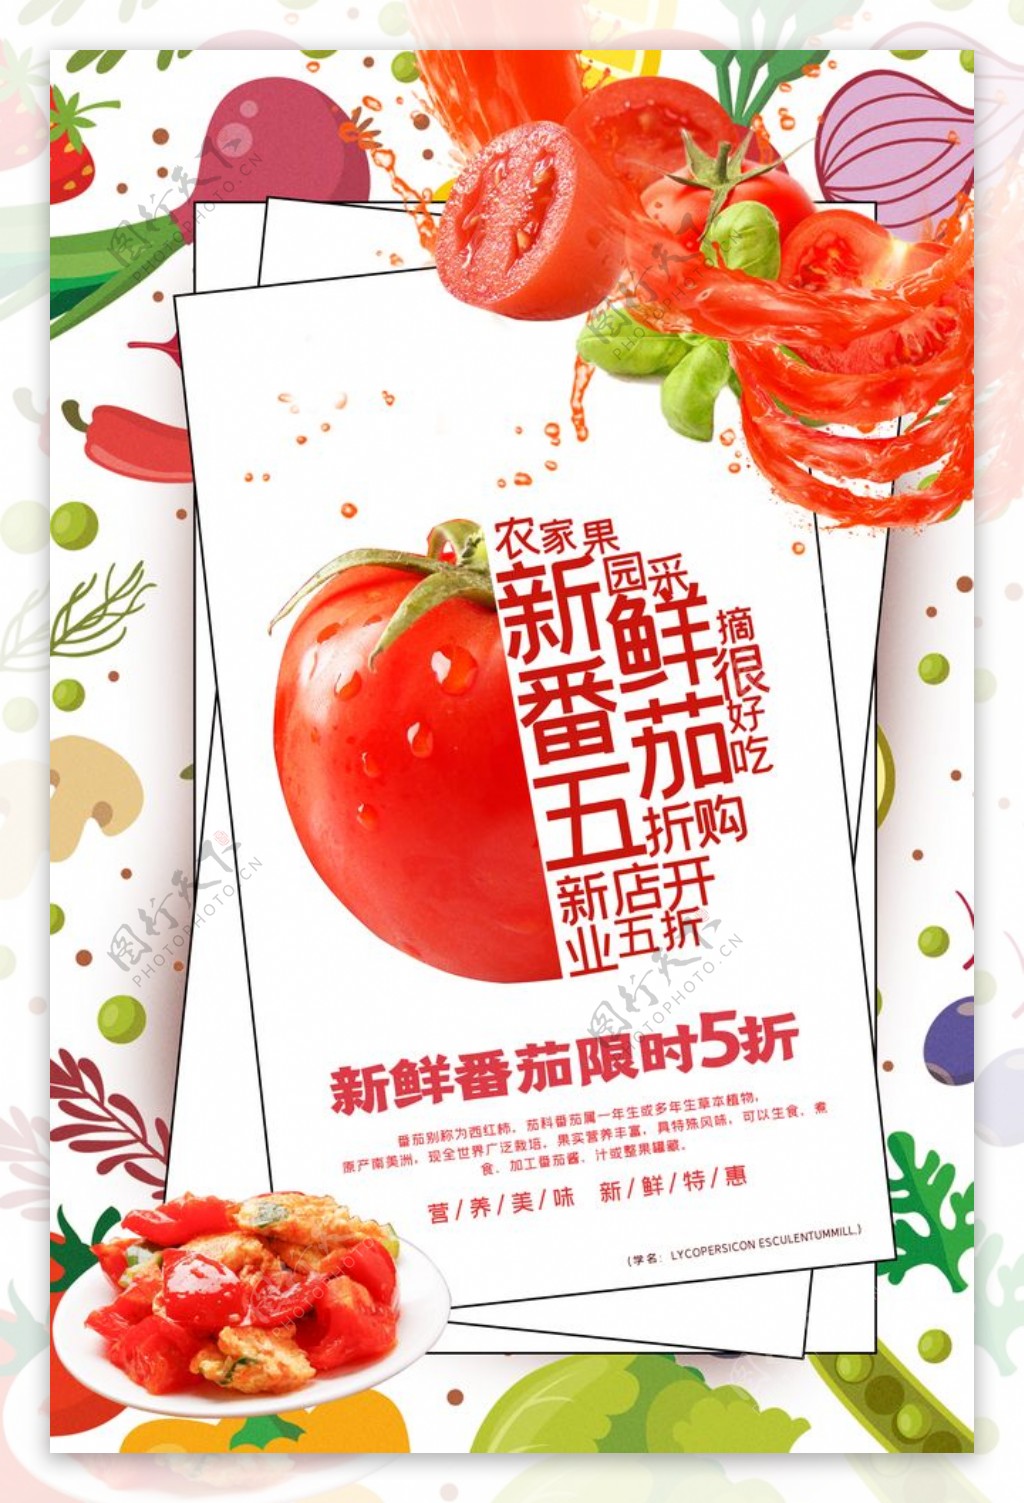 新鲜番茄水果活动宣传海报素材图片